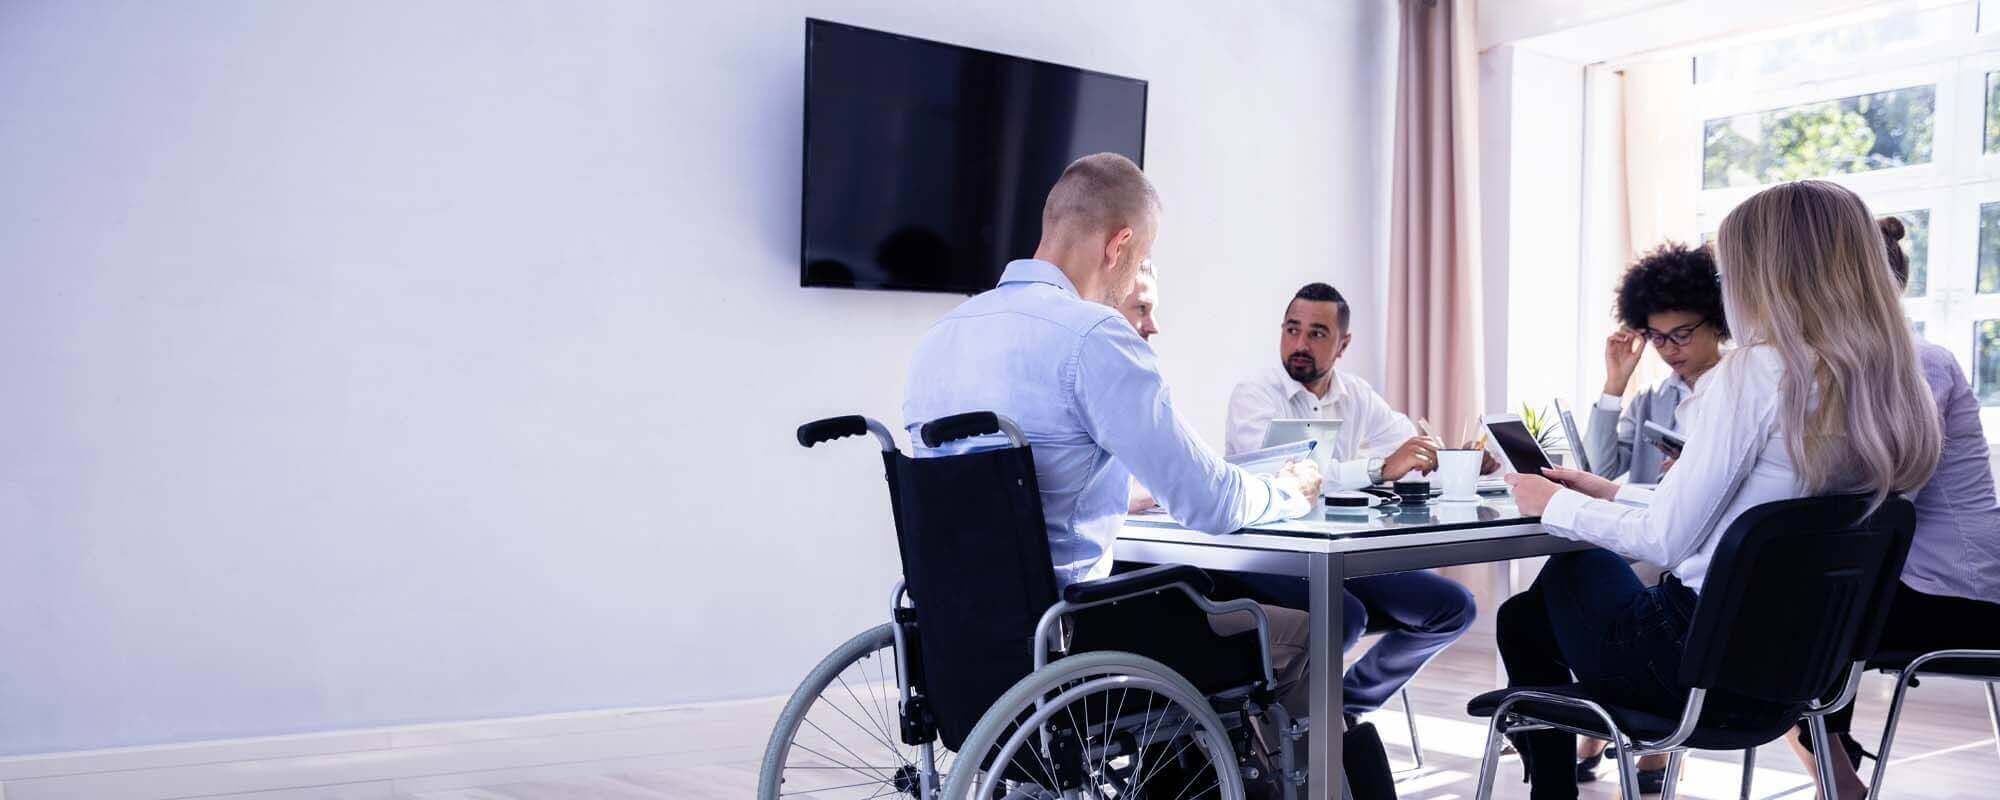 Rollstuhlfahrer sitzt mit Kollegen in einem Konferenzr